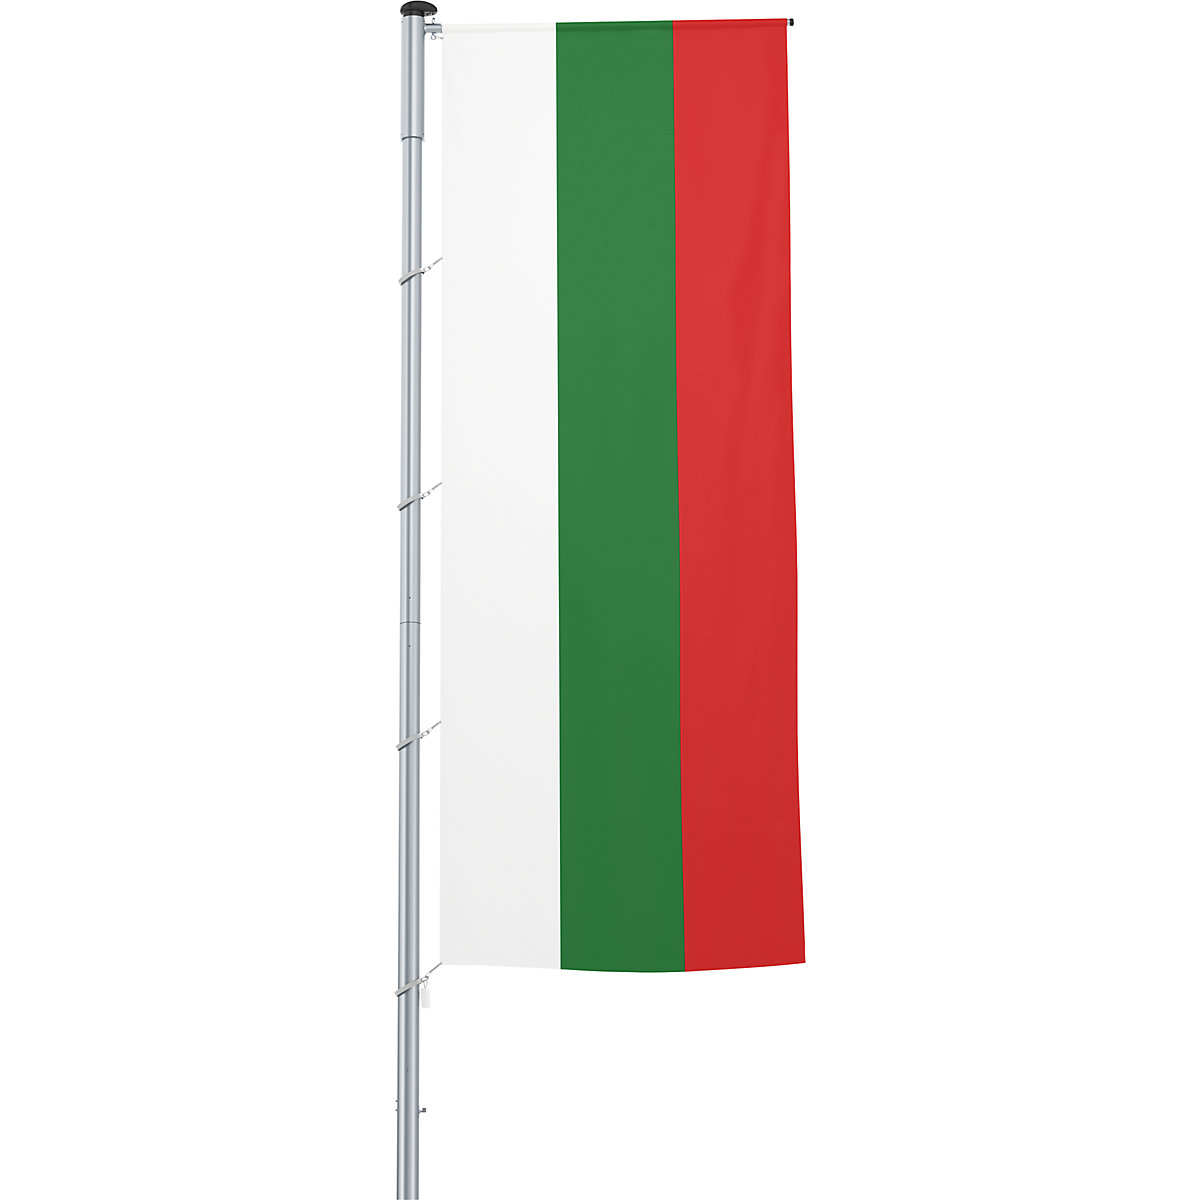 Mannus – Bandera con pluma/bandera del país, formato 1,2 x 3 m, Bulgaria